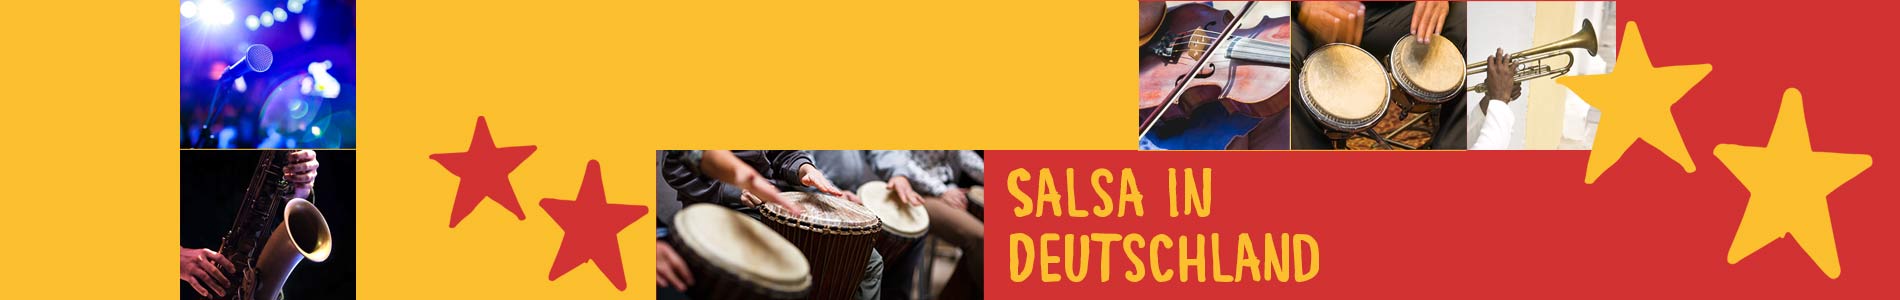 Salsa in Burgsolms – Salsa lernen und tanzen, Tanzkurse, Partys, Veranstaltungen